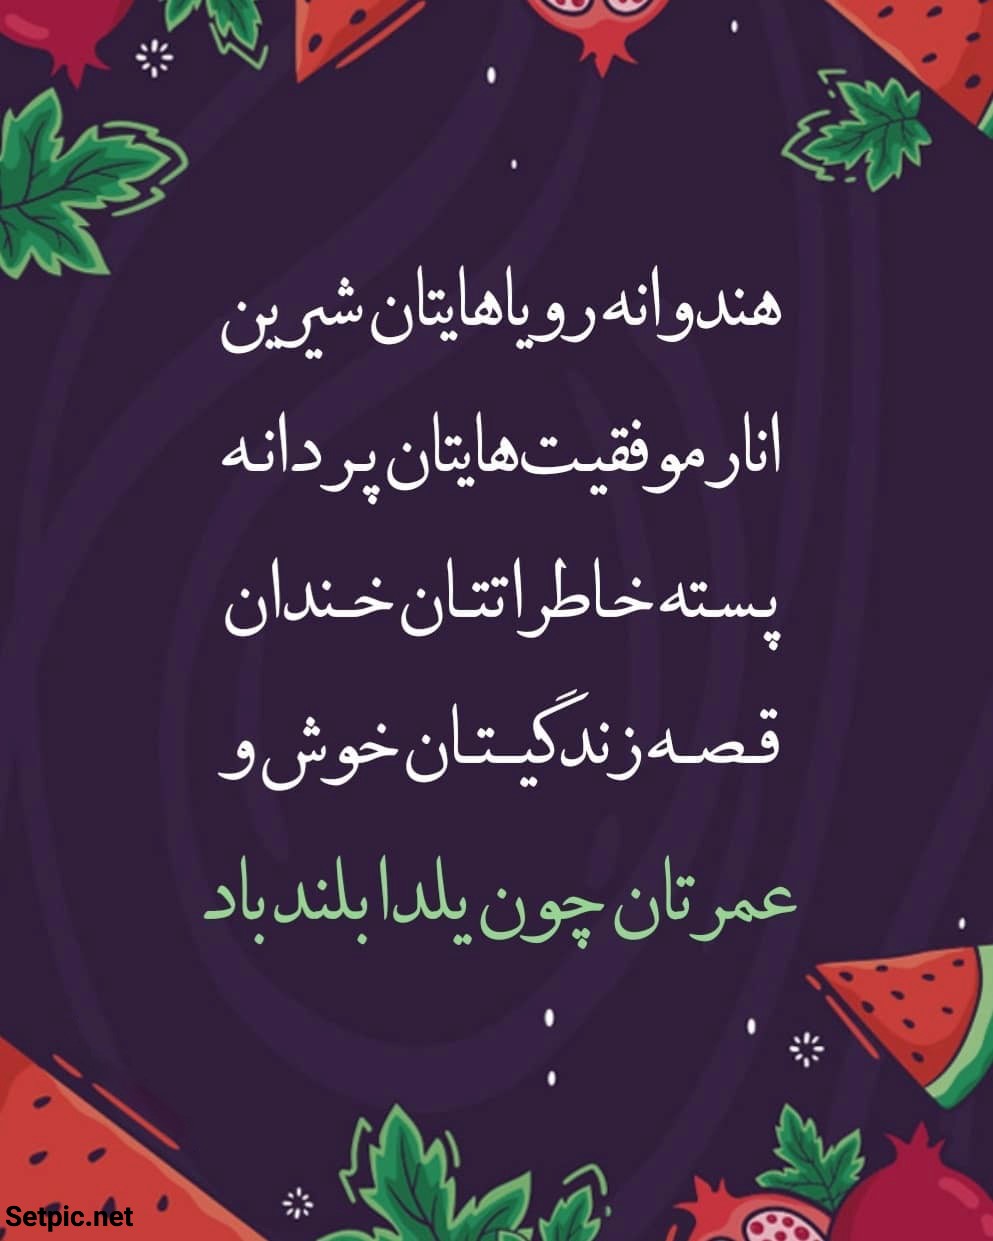 عکس نوشته تبریک شب یلدا با شعر